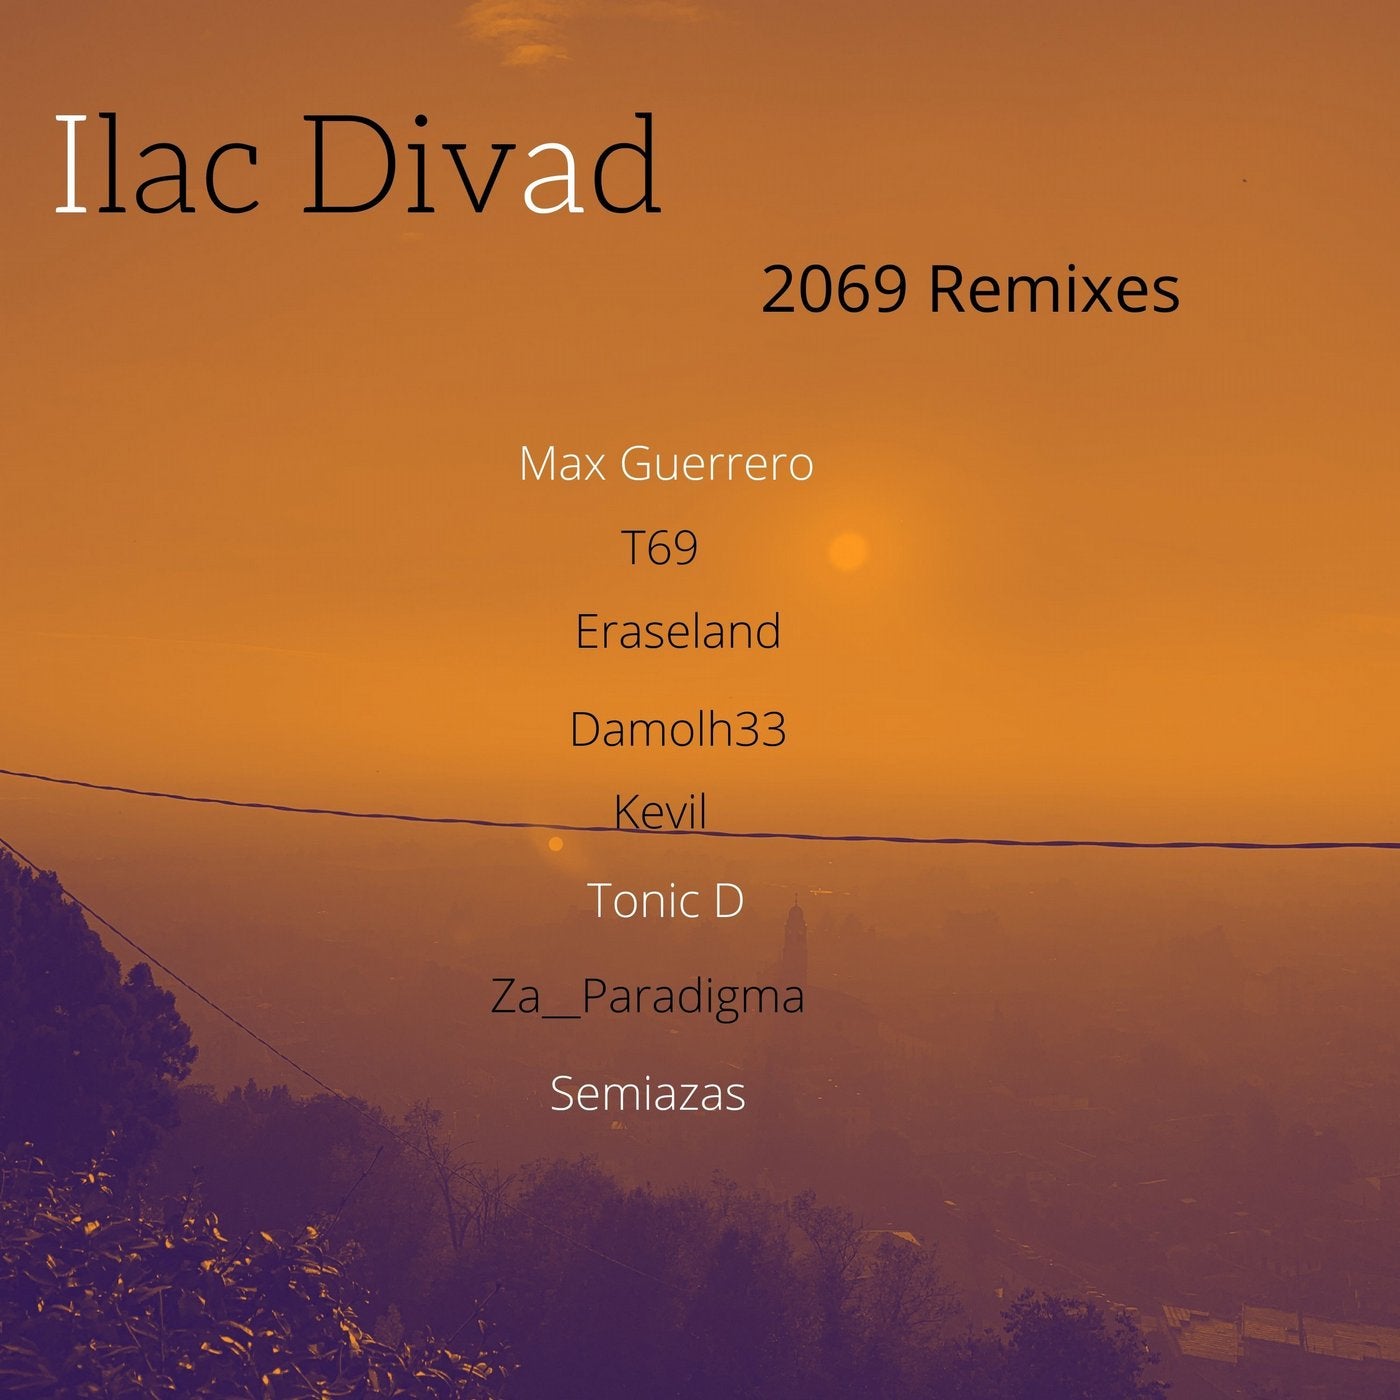 2069 Remixes